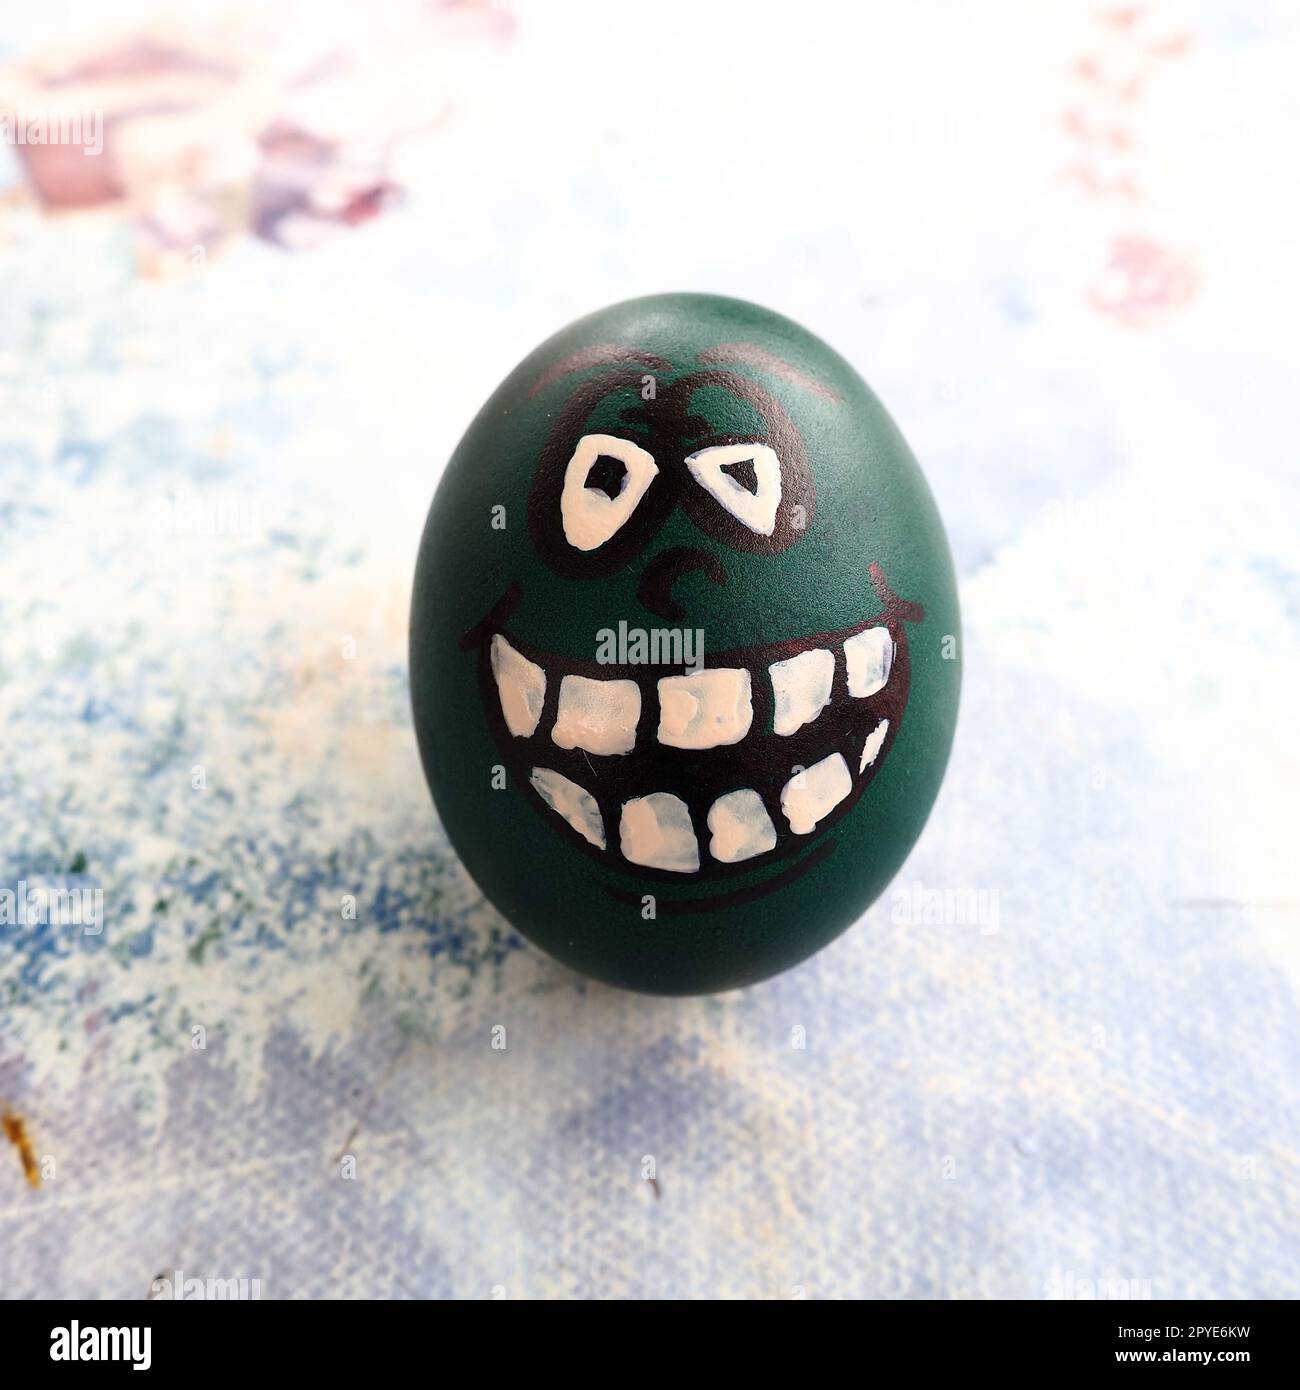 Uovo di Pasqua colorato di verde con una faccia risa dipinta. Raffreddare la zona con gli occhi e i grandi denti bianchi. Tazza spaventosa per Halloween. Emoticon per Pasqua. Sfondo chiaro astratto. Foto Stock